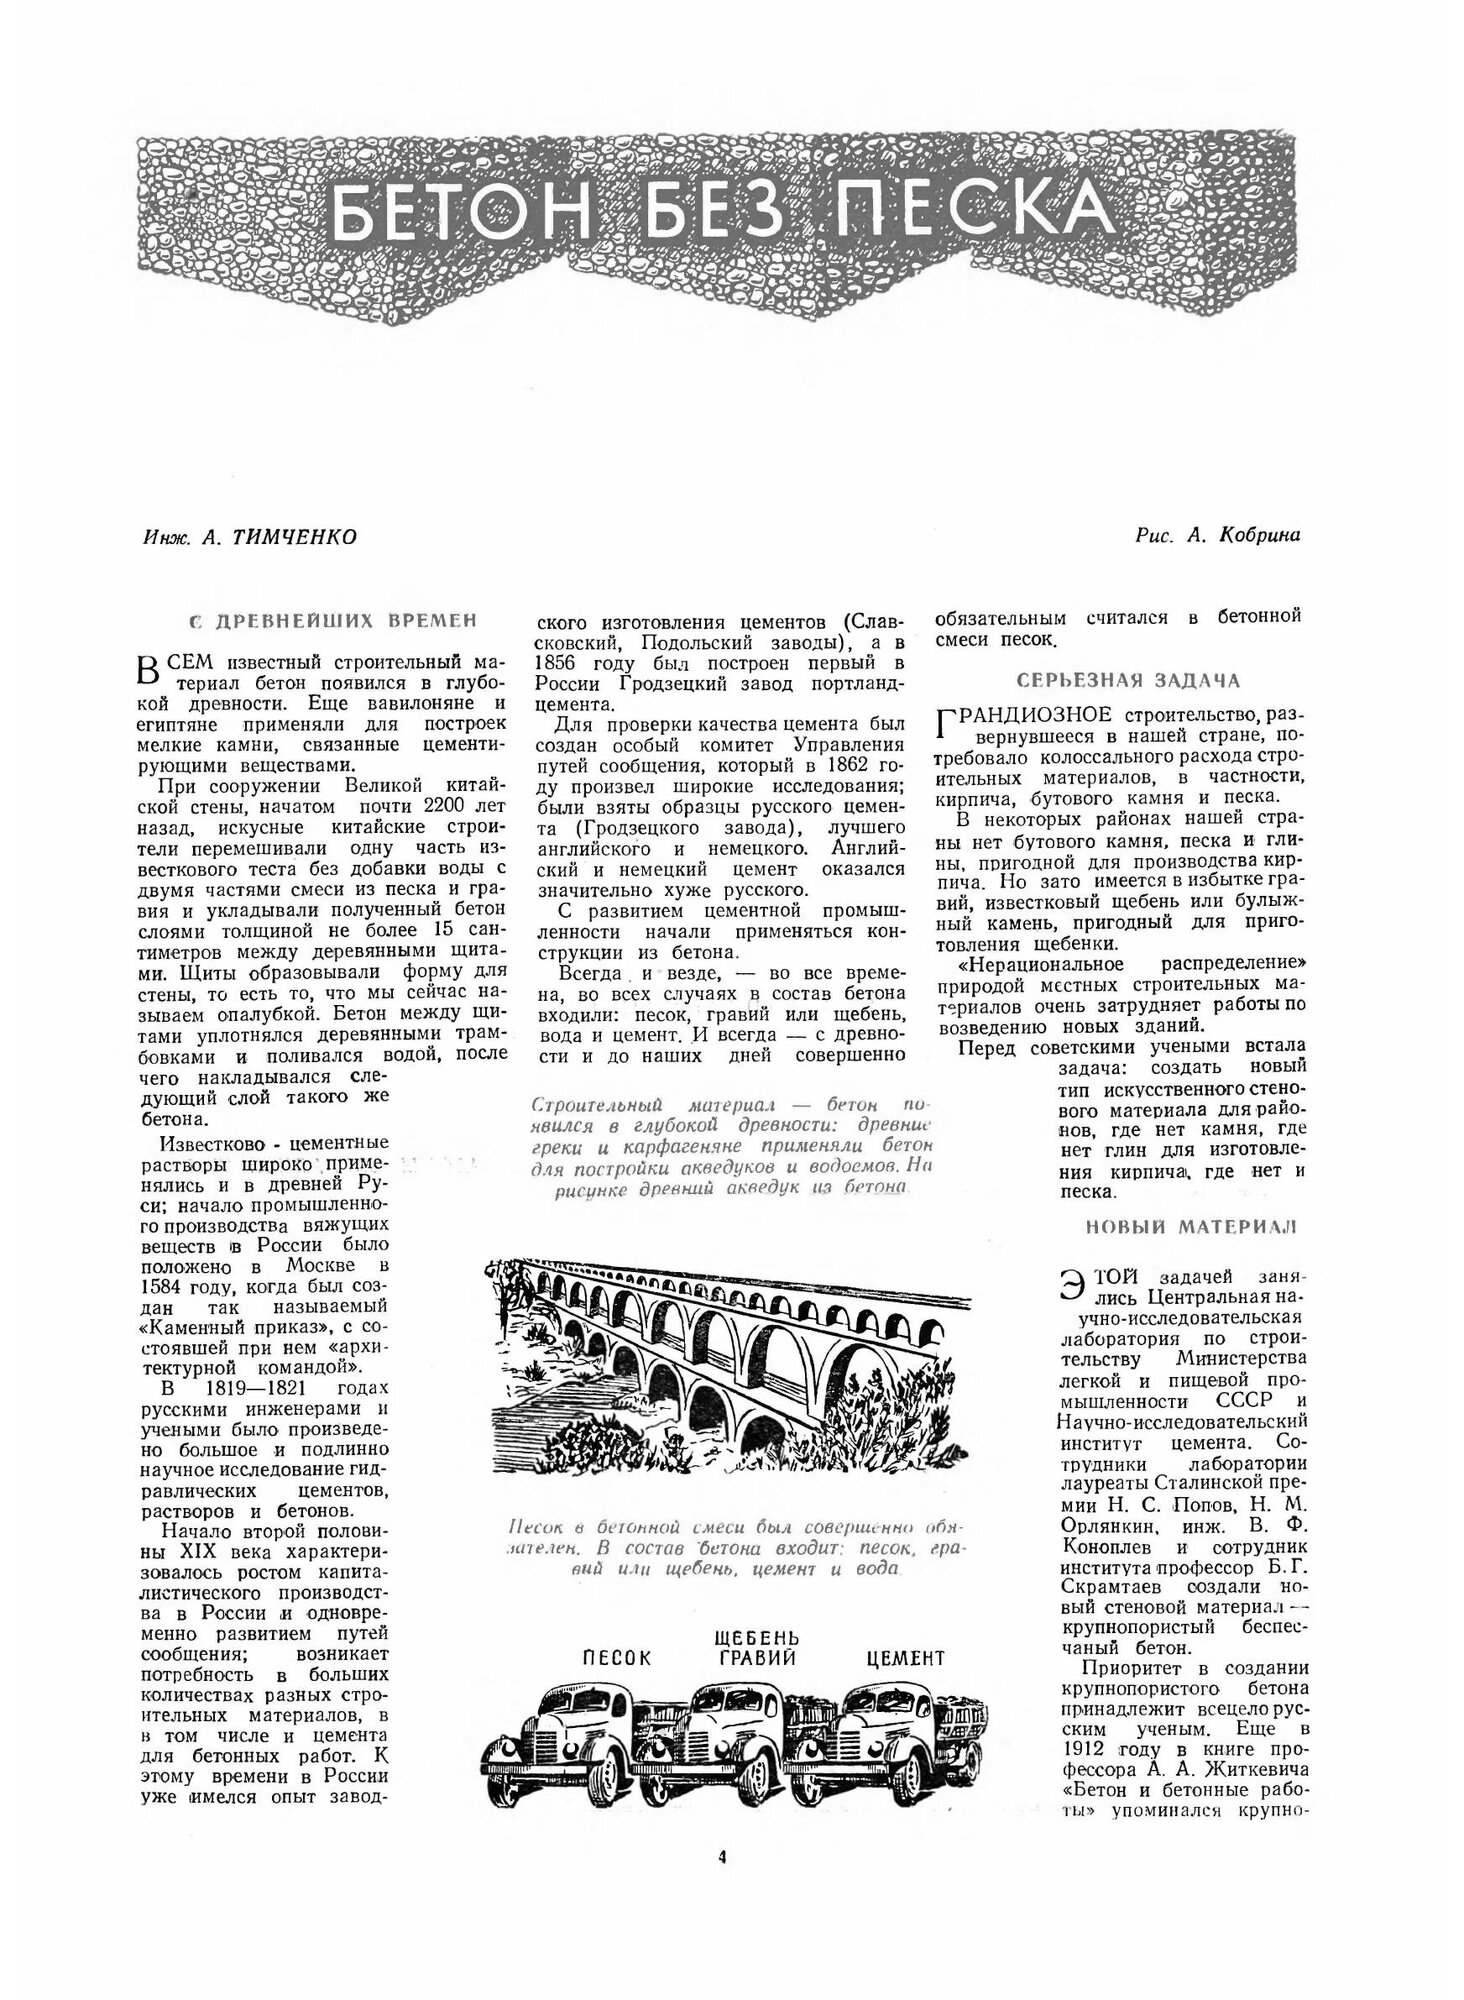 Журнал "Знание сила". №05, 1953 - фото №5